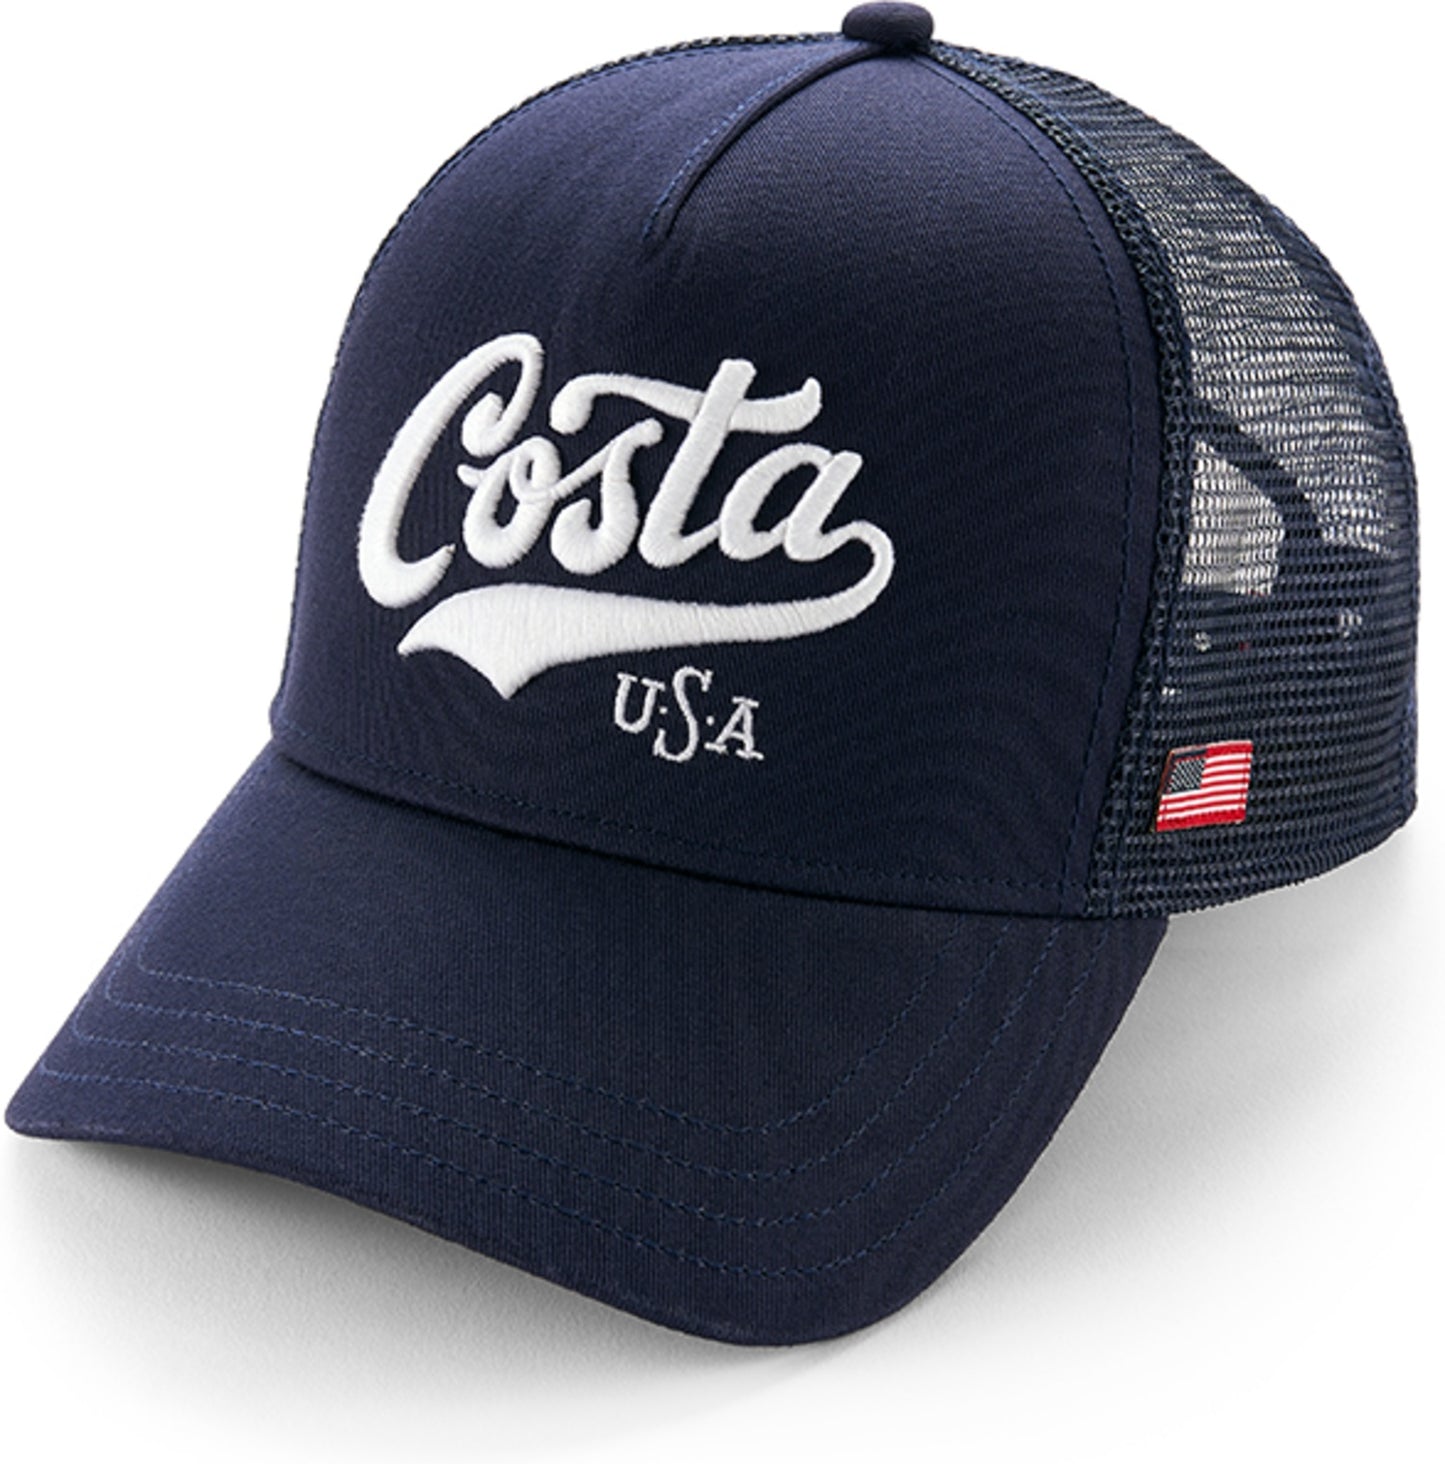 Costa - Script USA Hat